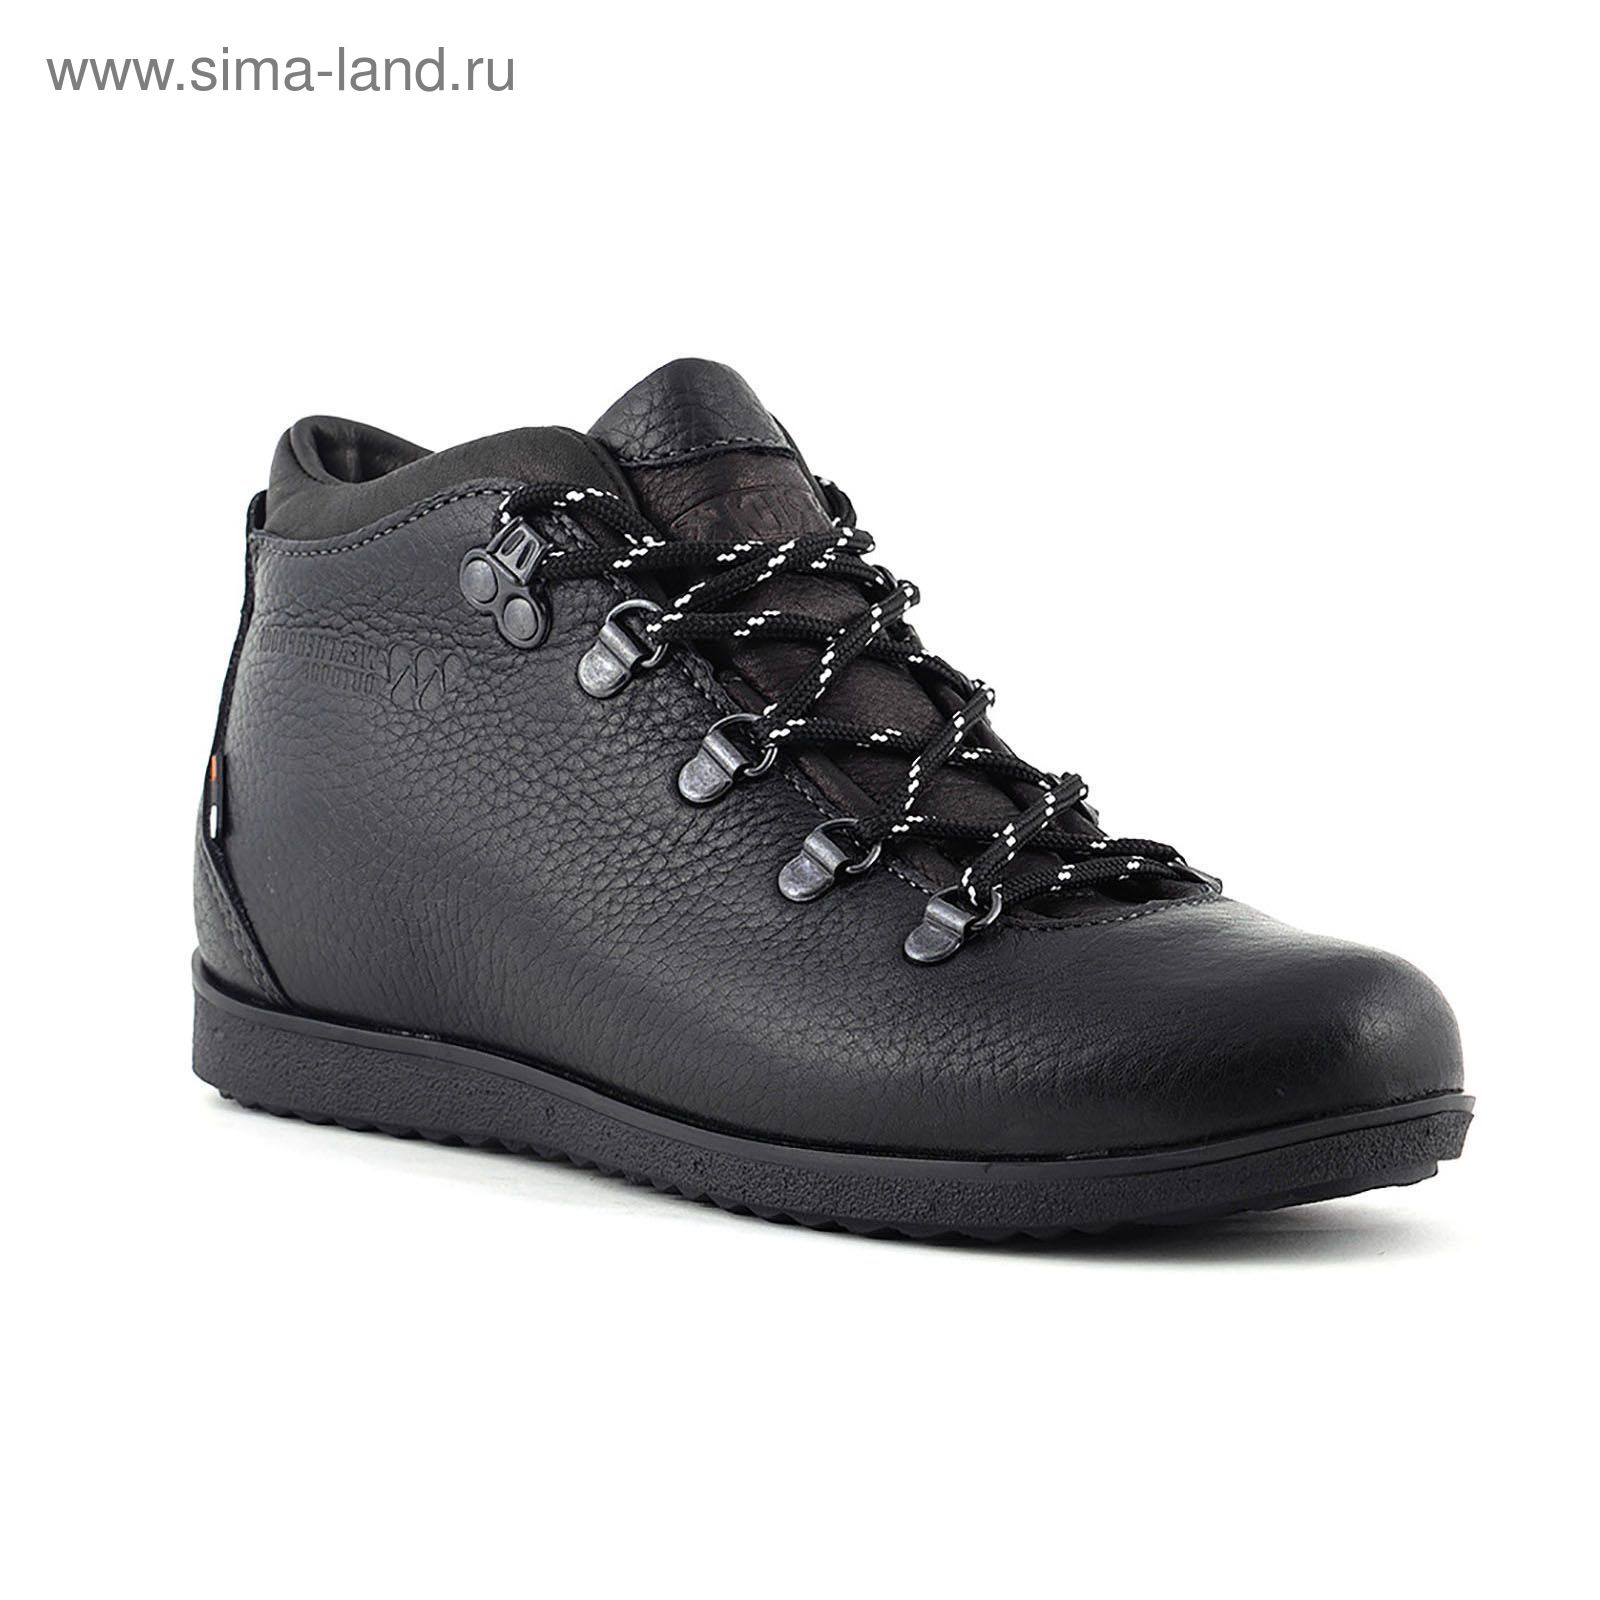 Ботинки TREK Спорт 77-56 мех (черный) (р. 36)